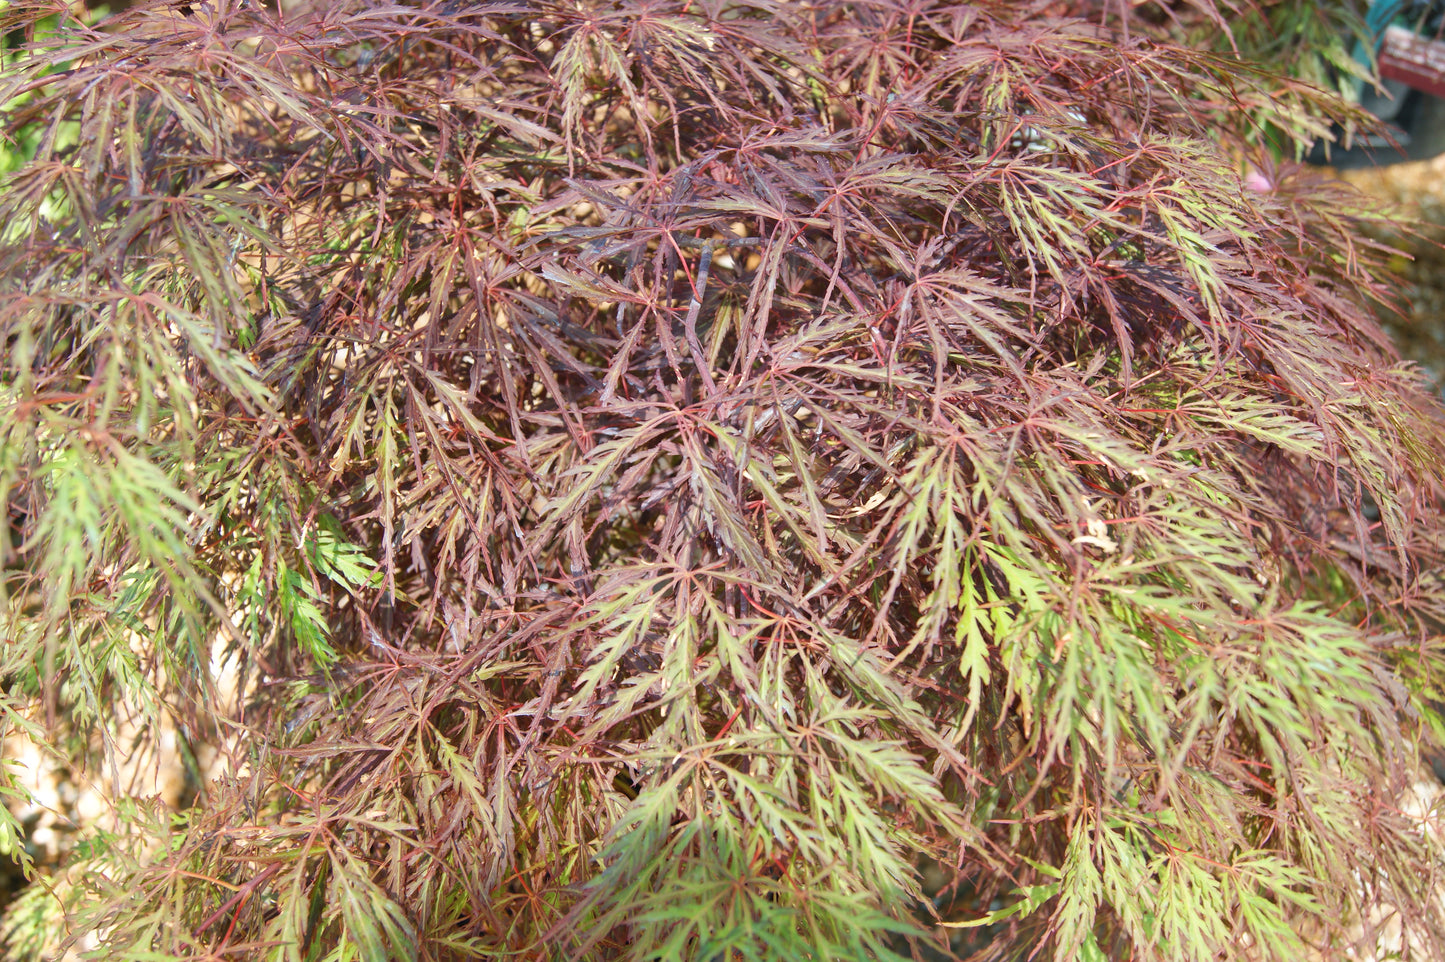 Acer palmatum var. dissectum 'Crimson Queen'